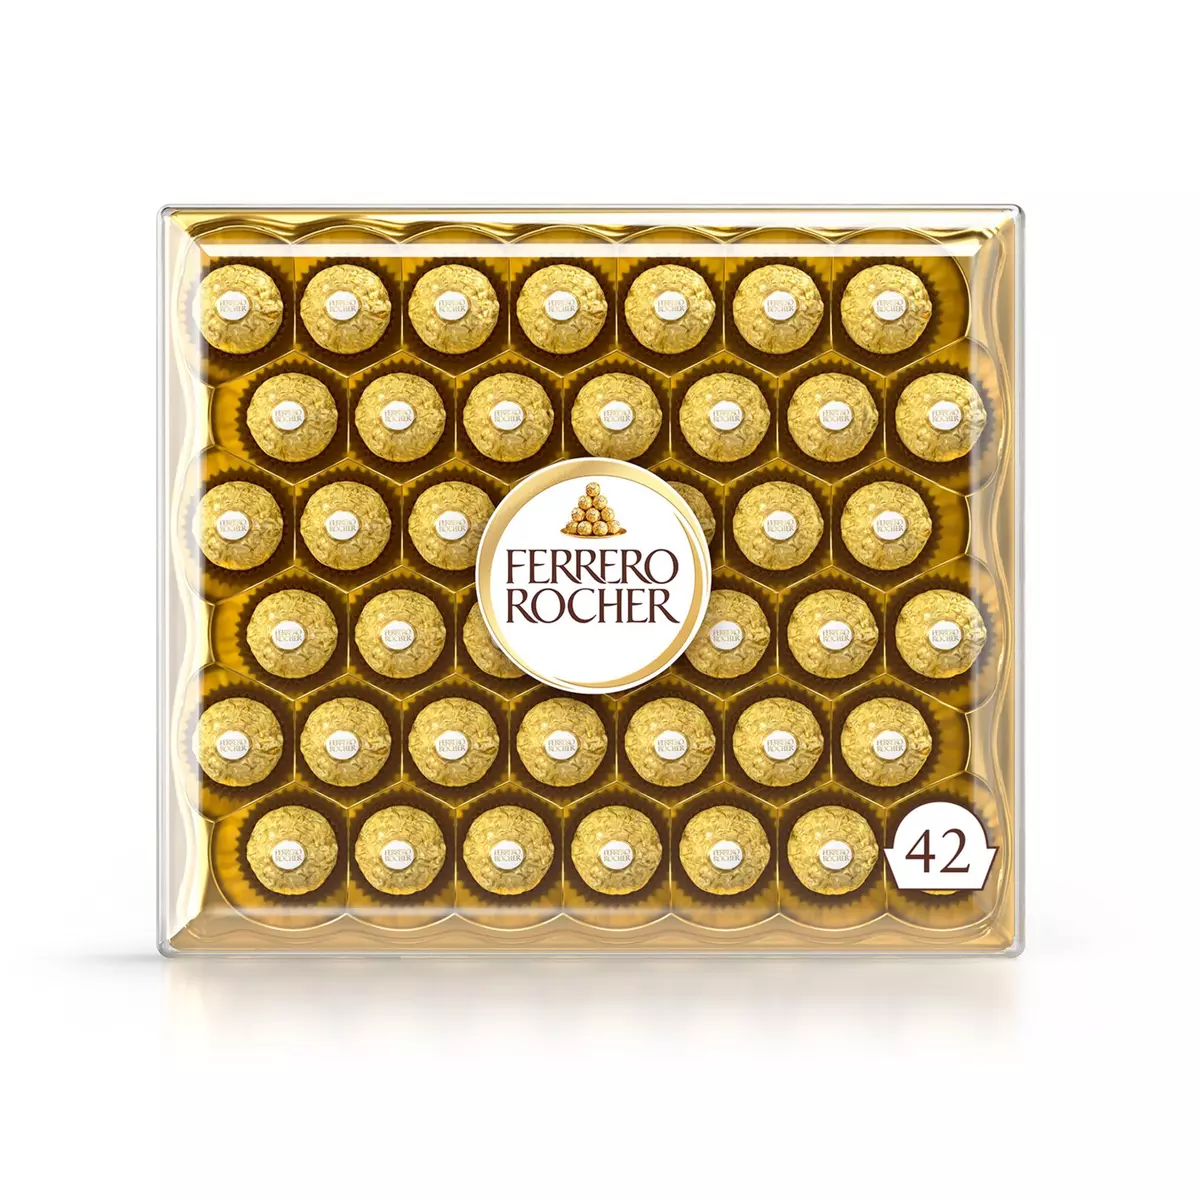 Ferrero Rocher Chocolat The Golden Expérience 30 Pièces 375g